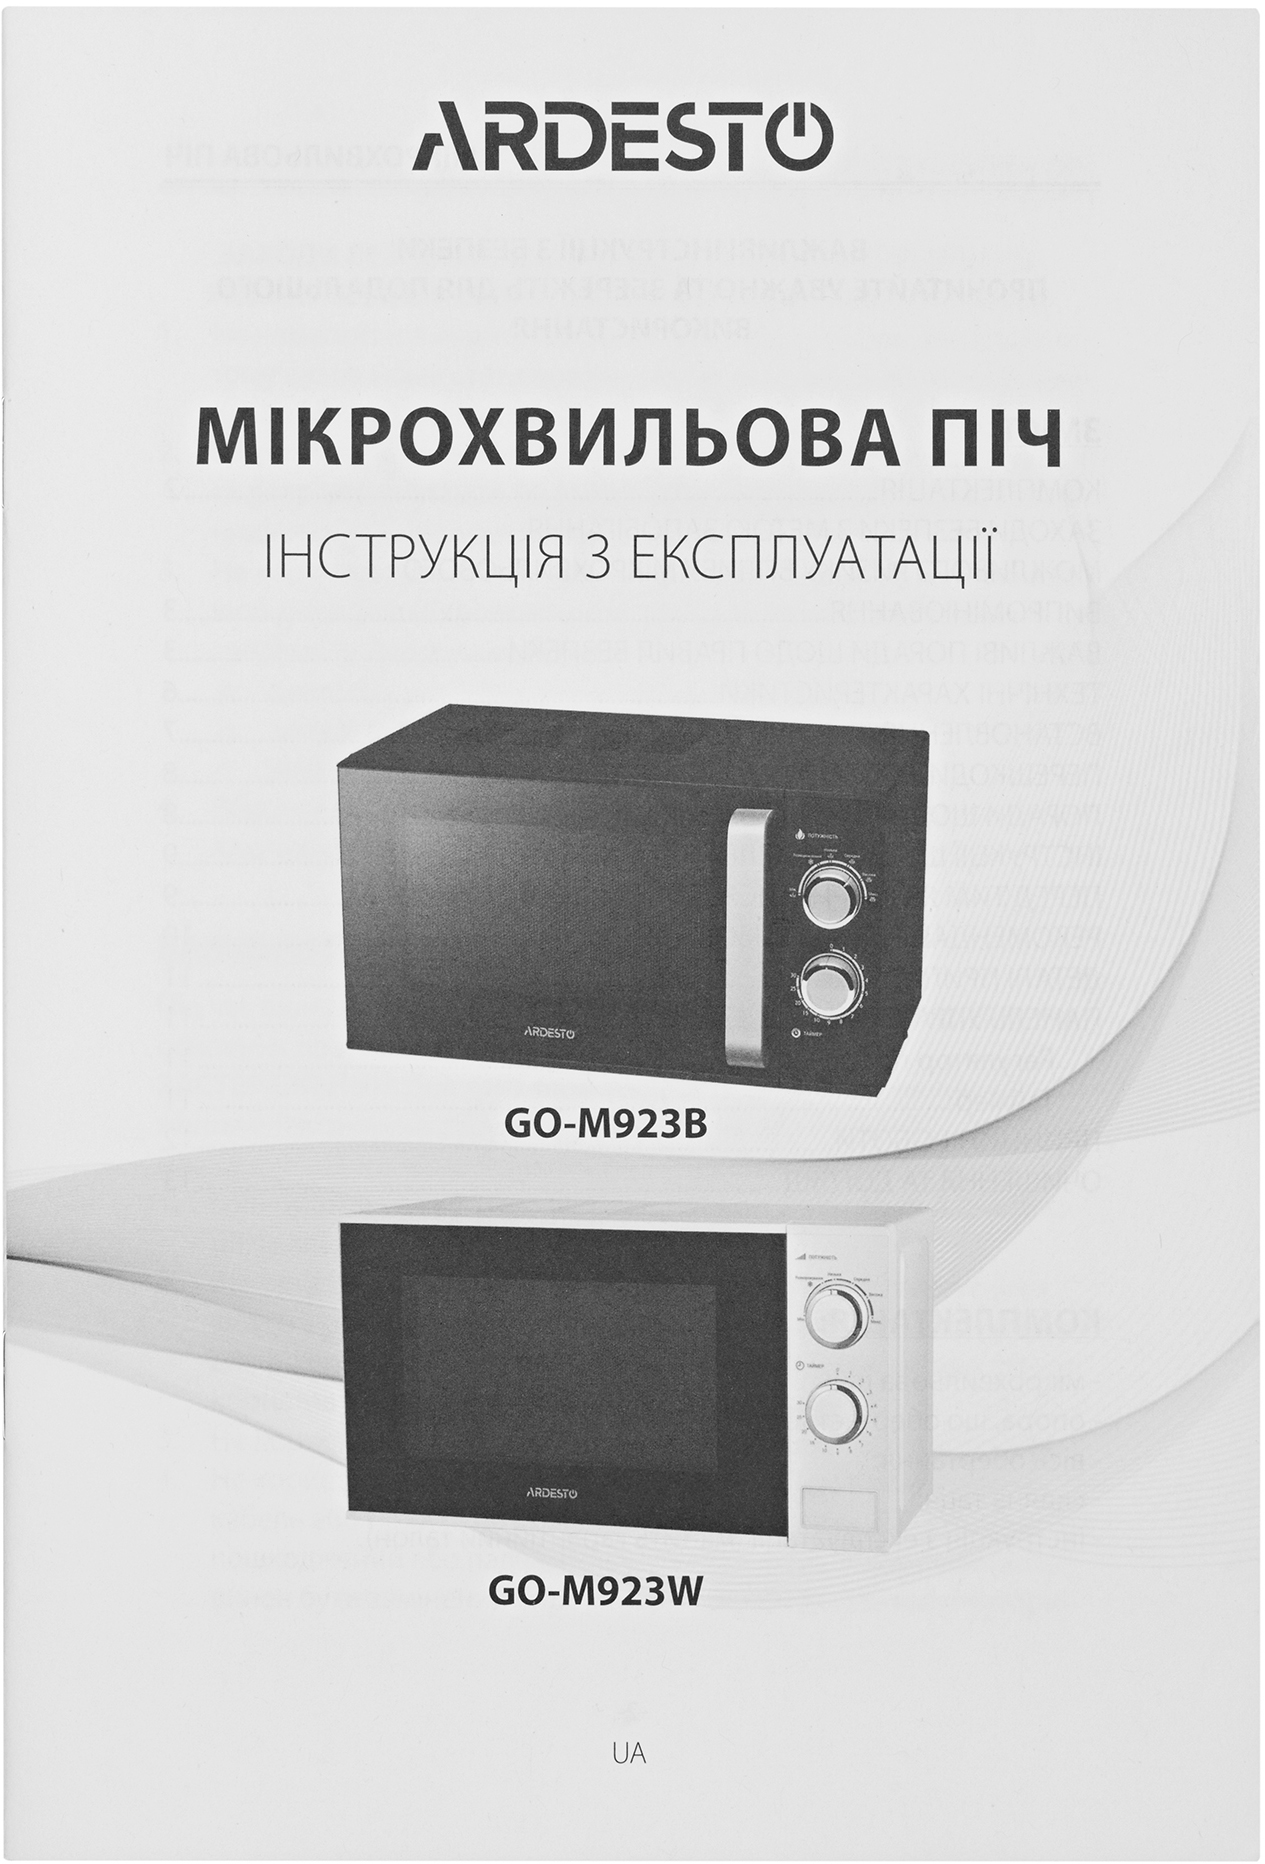 Микроволновая печь Ardesto GO-M923B отзывы - изображения 5